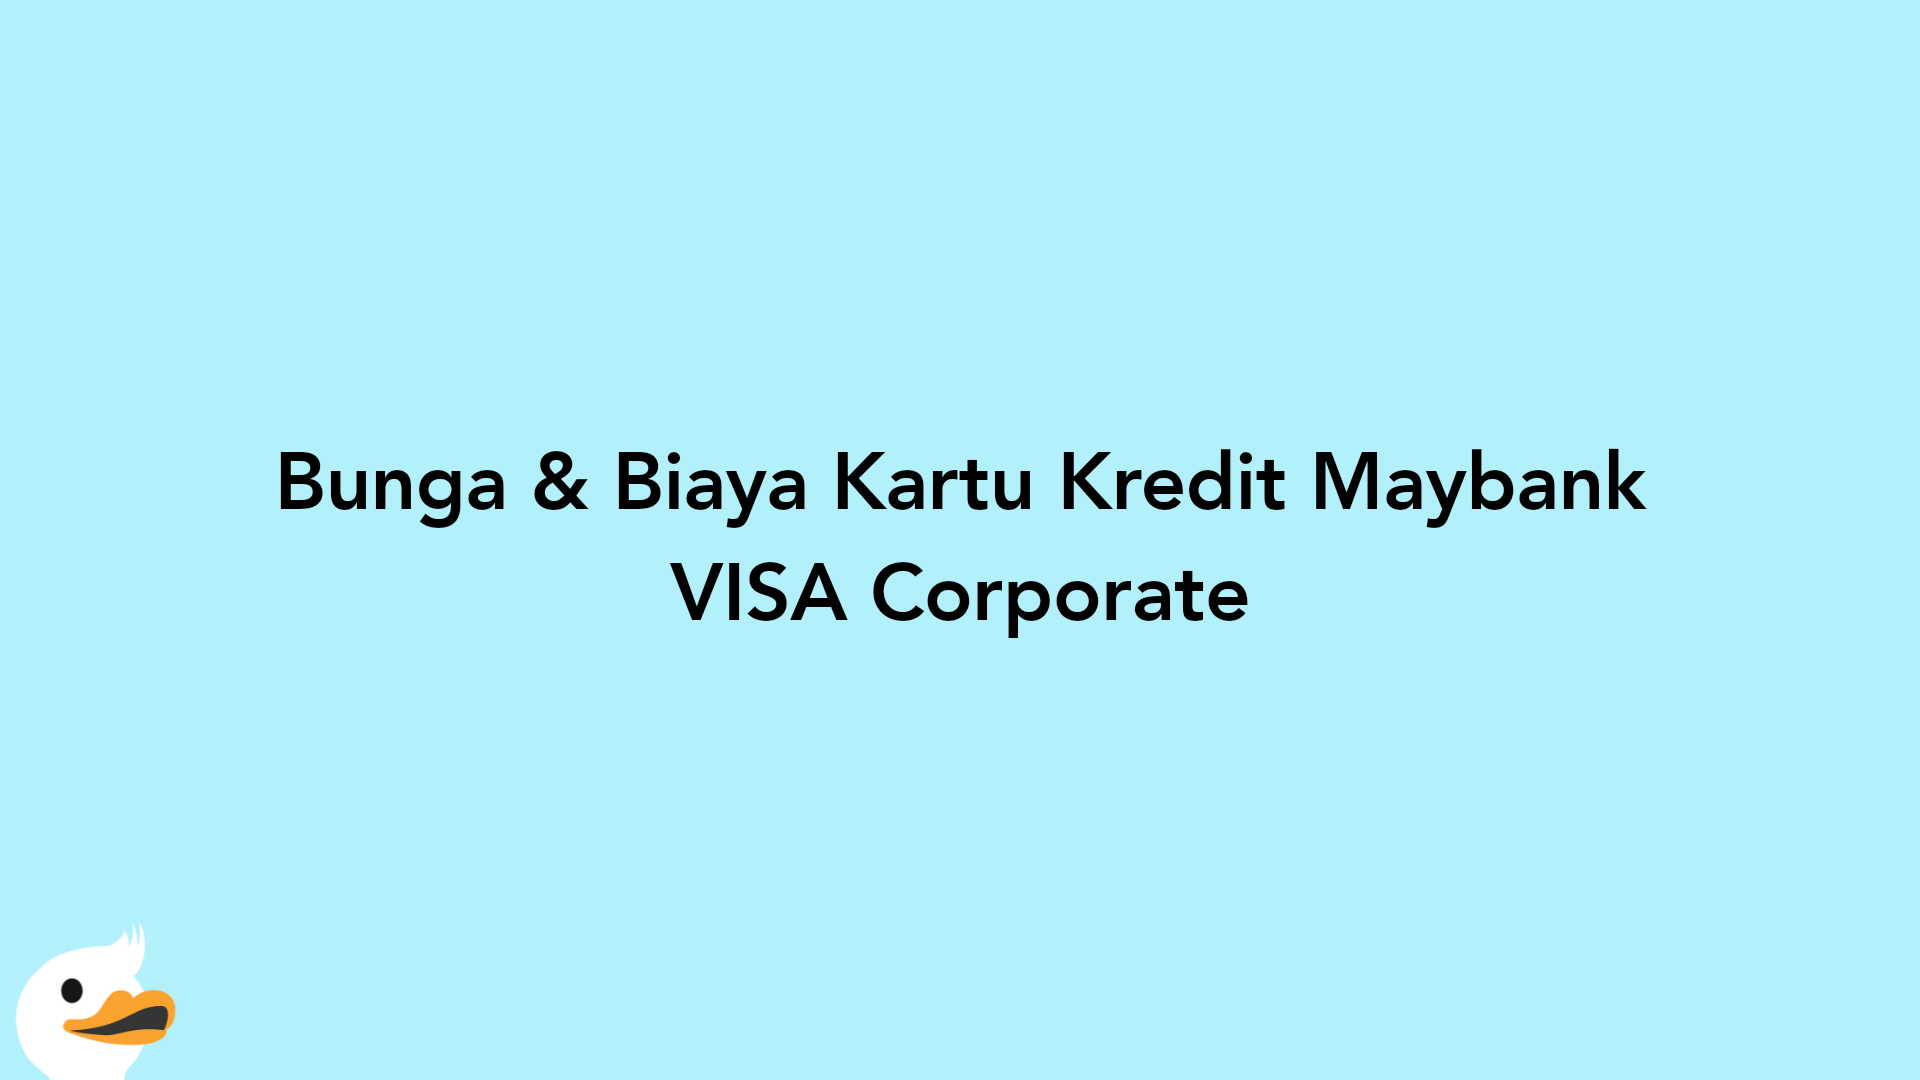 Bunga & Biaya Kartu Kredit Maybank VISA Corporate